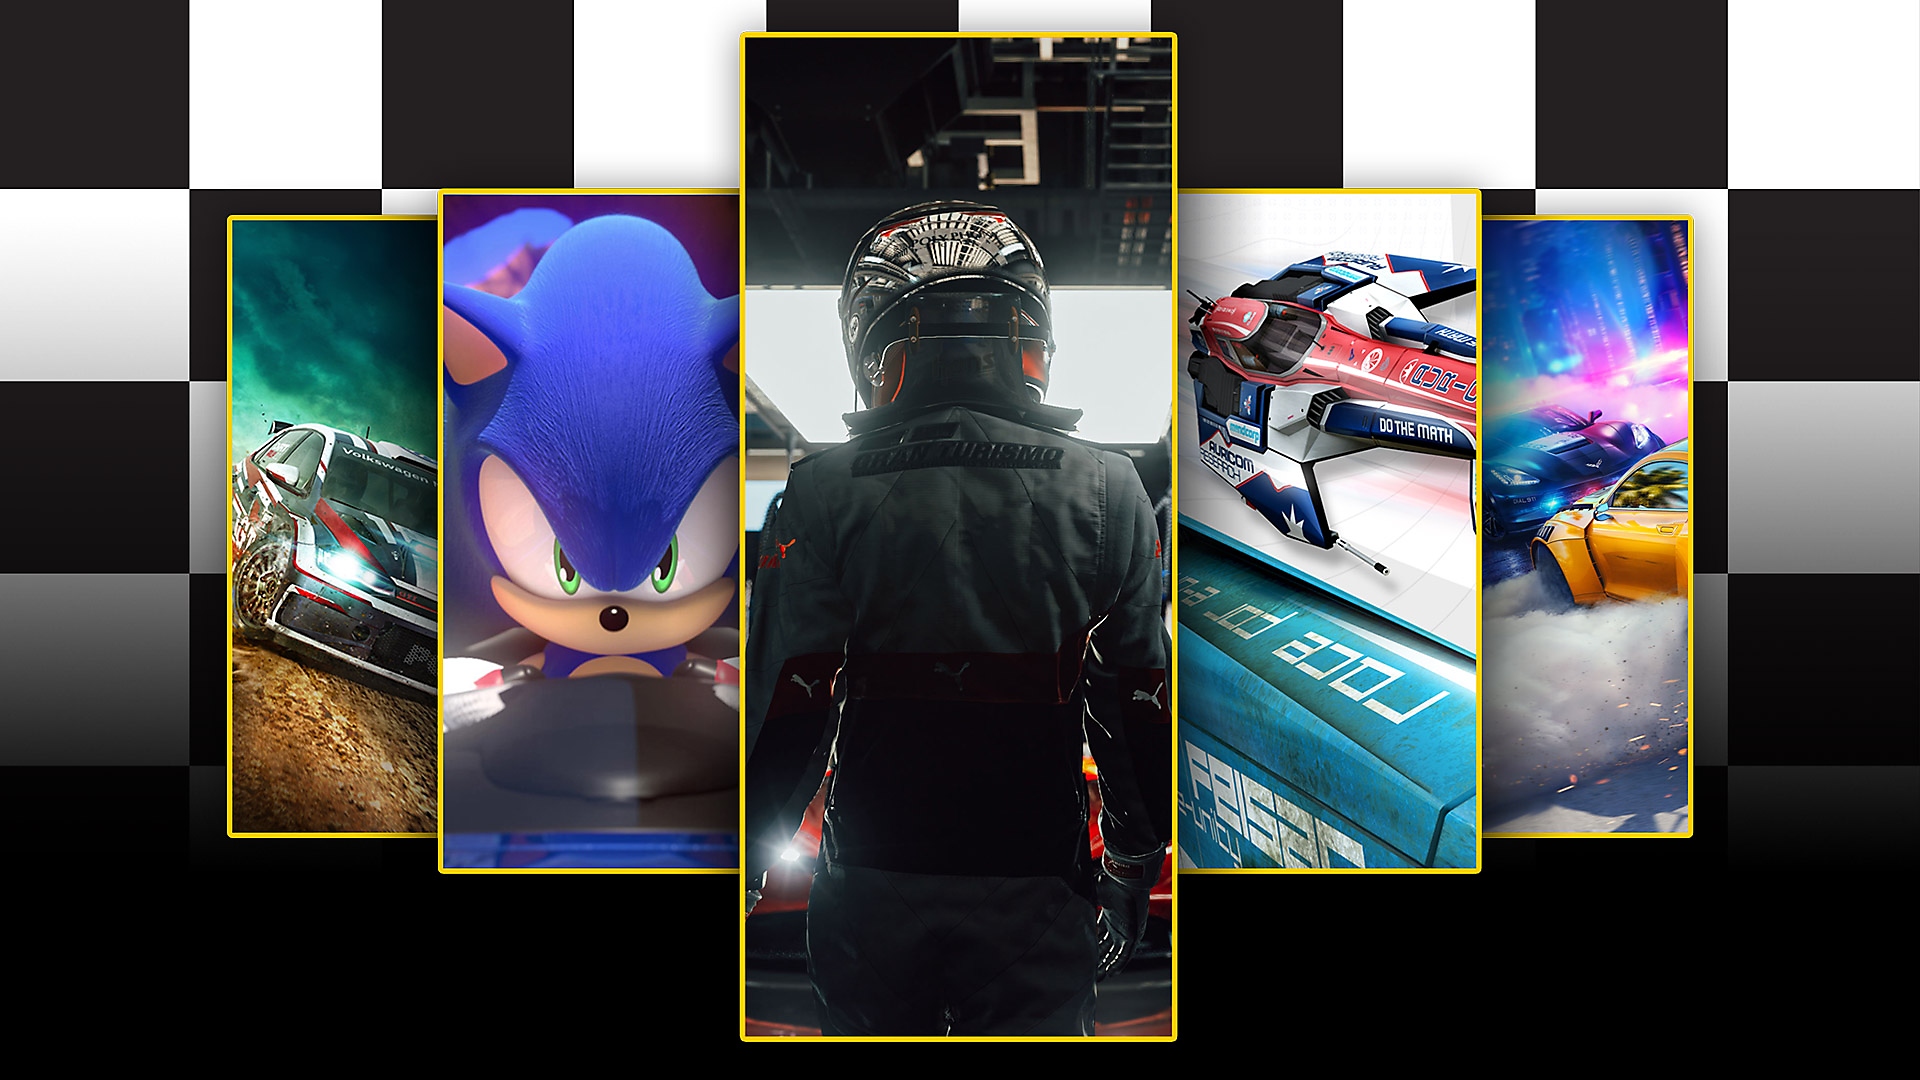 Arte promocional: melhores jogos de corrida para PS4